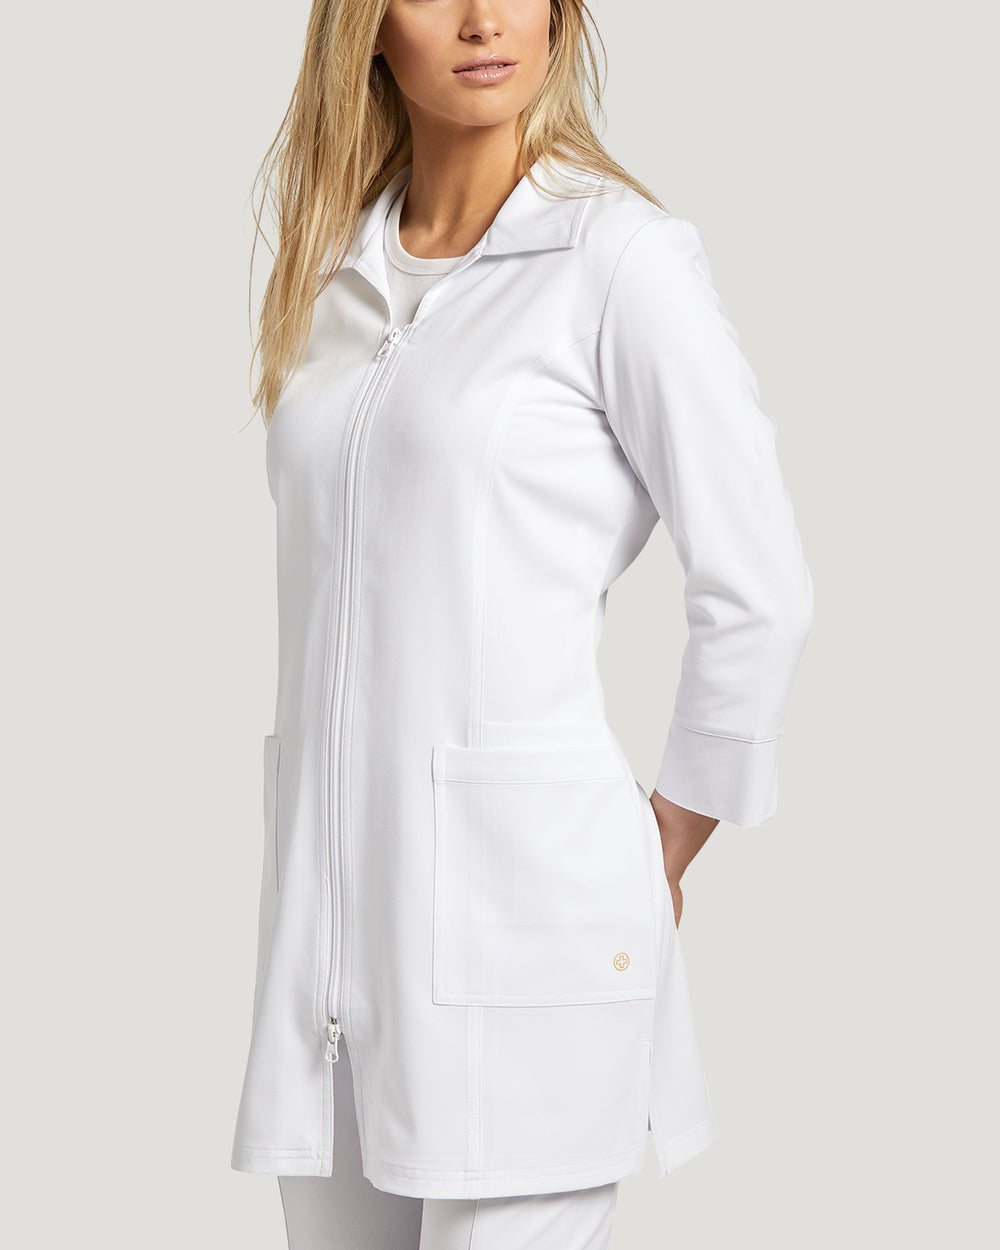 2817 White Cross Marvella Women's Labcoat